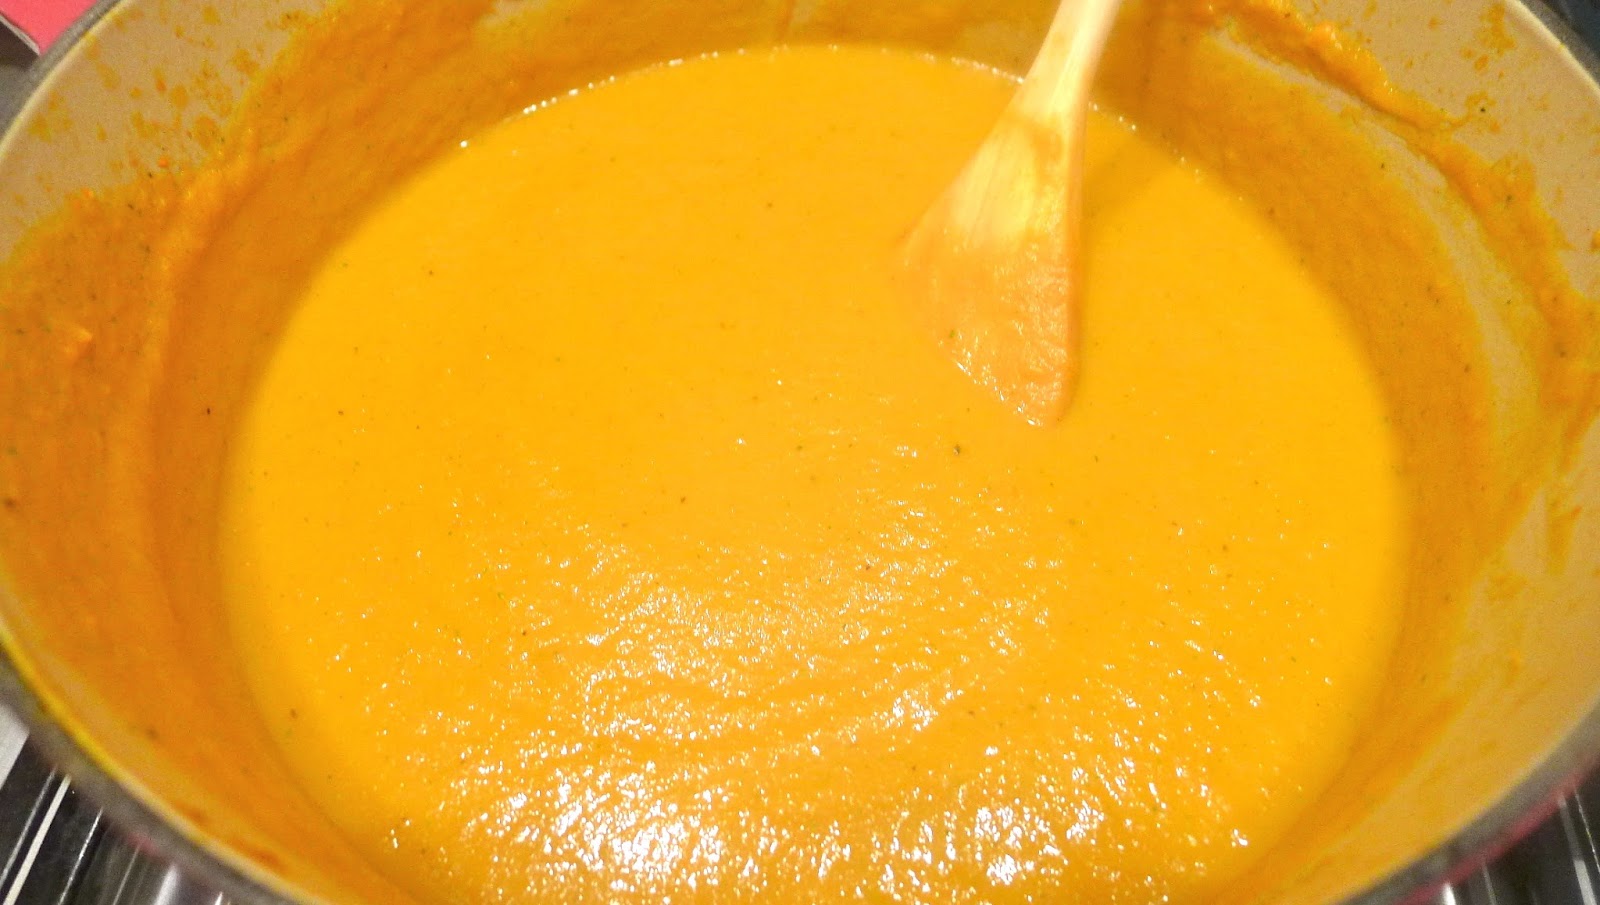 newFOOD tuesdayz: Roasted Carrot Soup